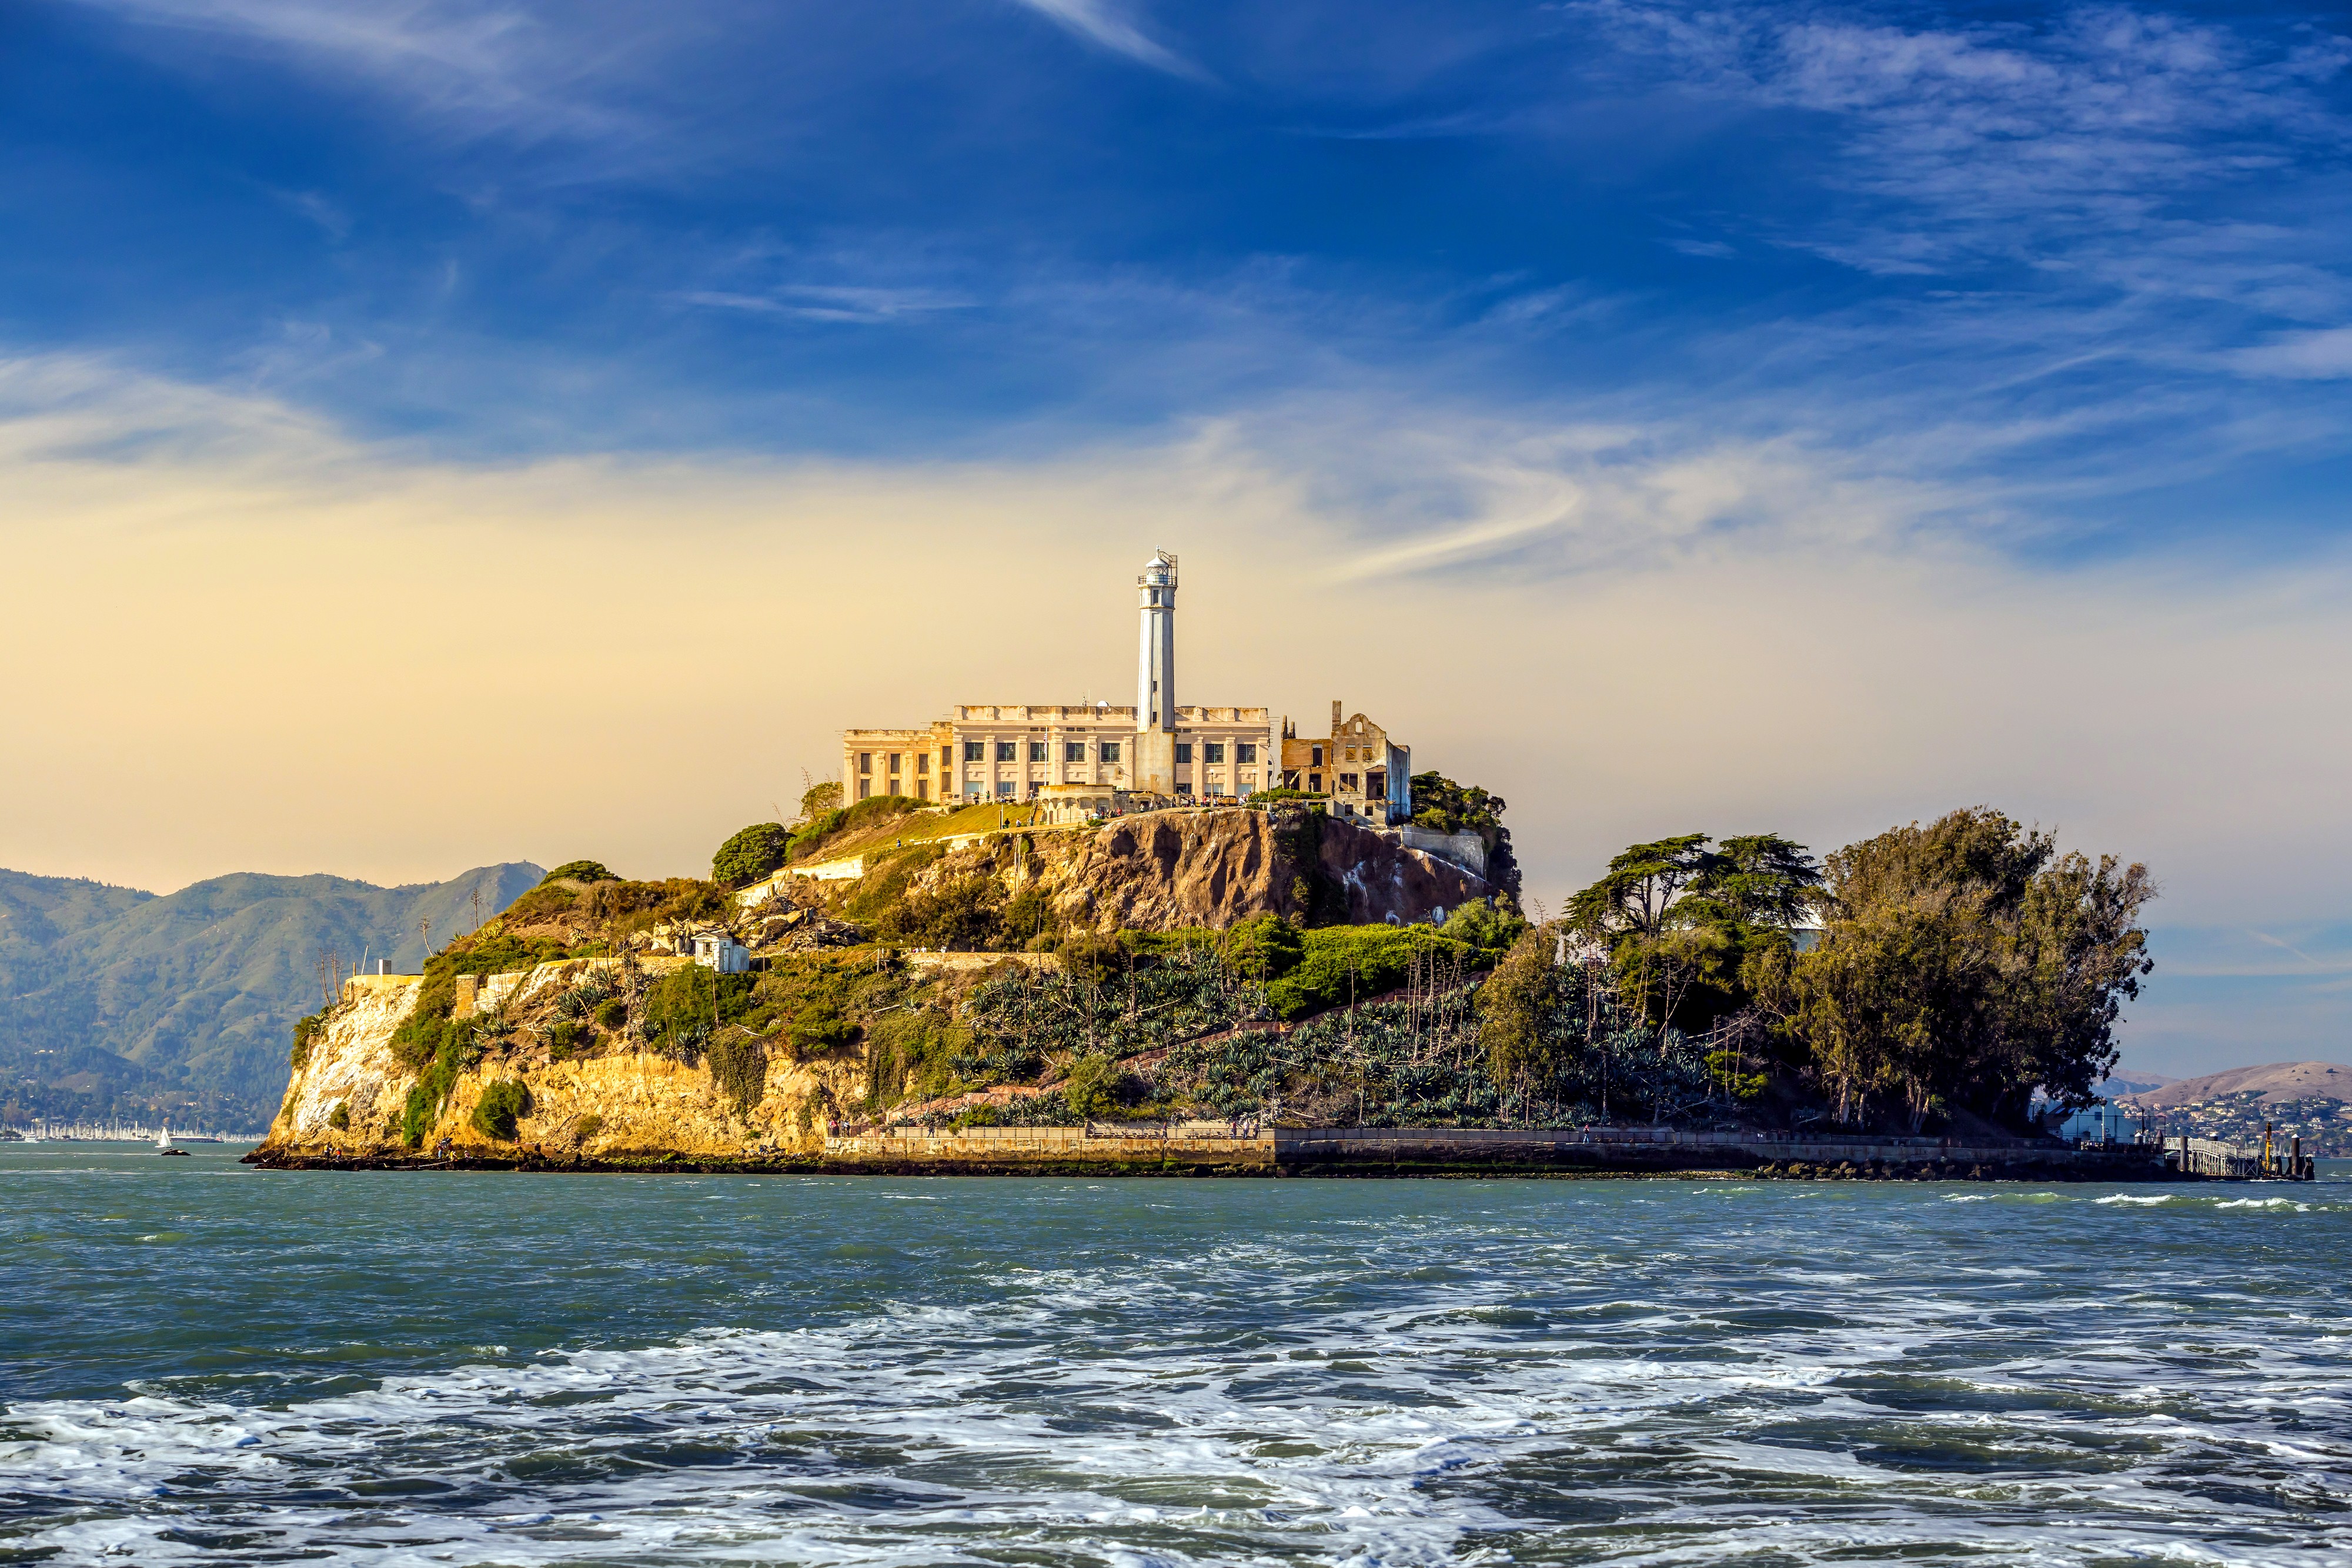 Alcatraz Prison off Fisherman's Wharf